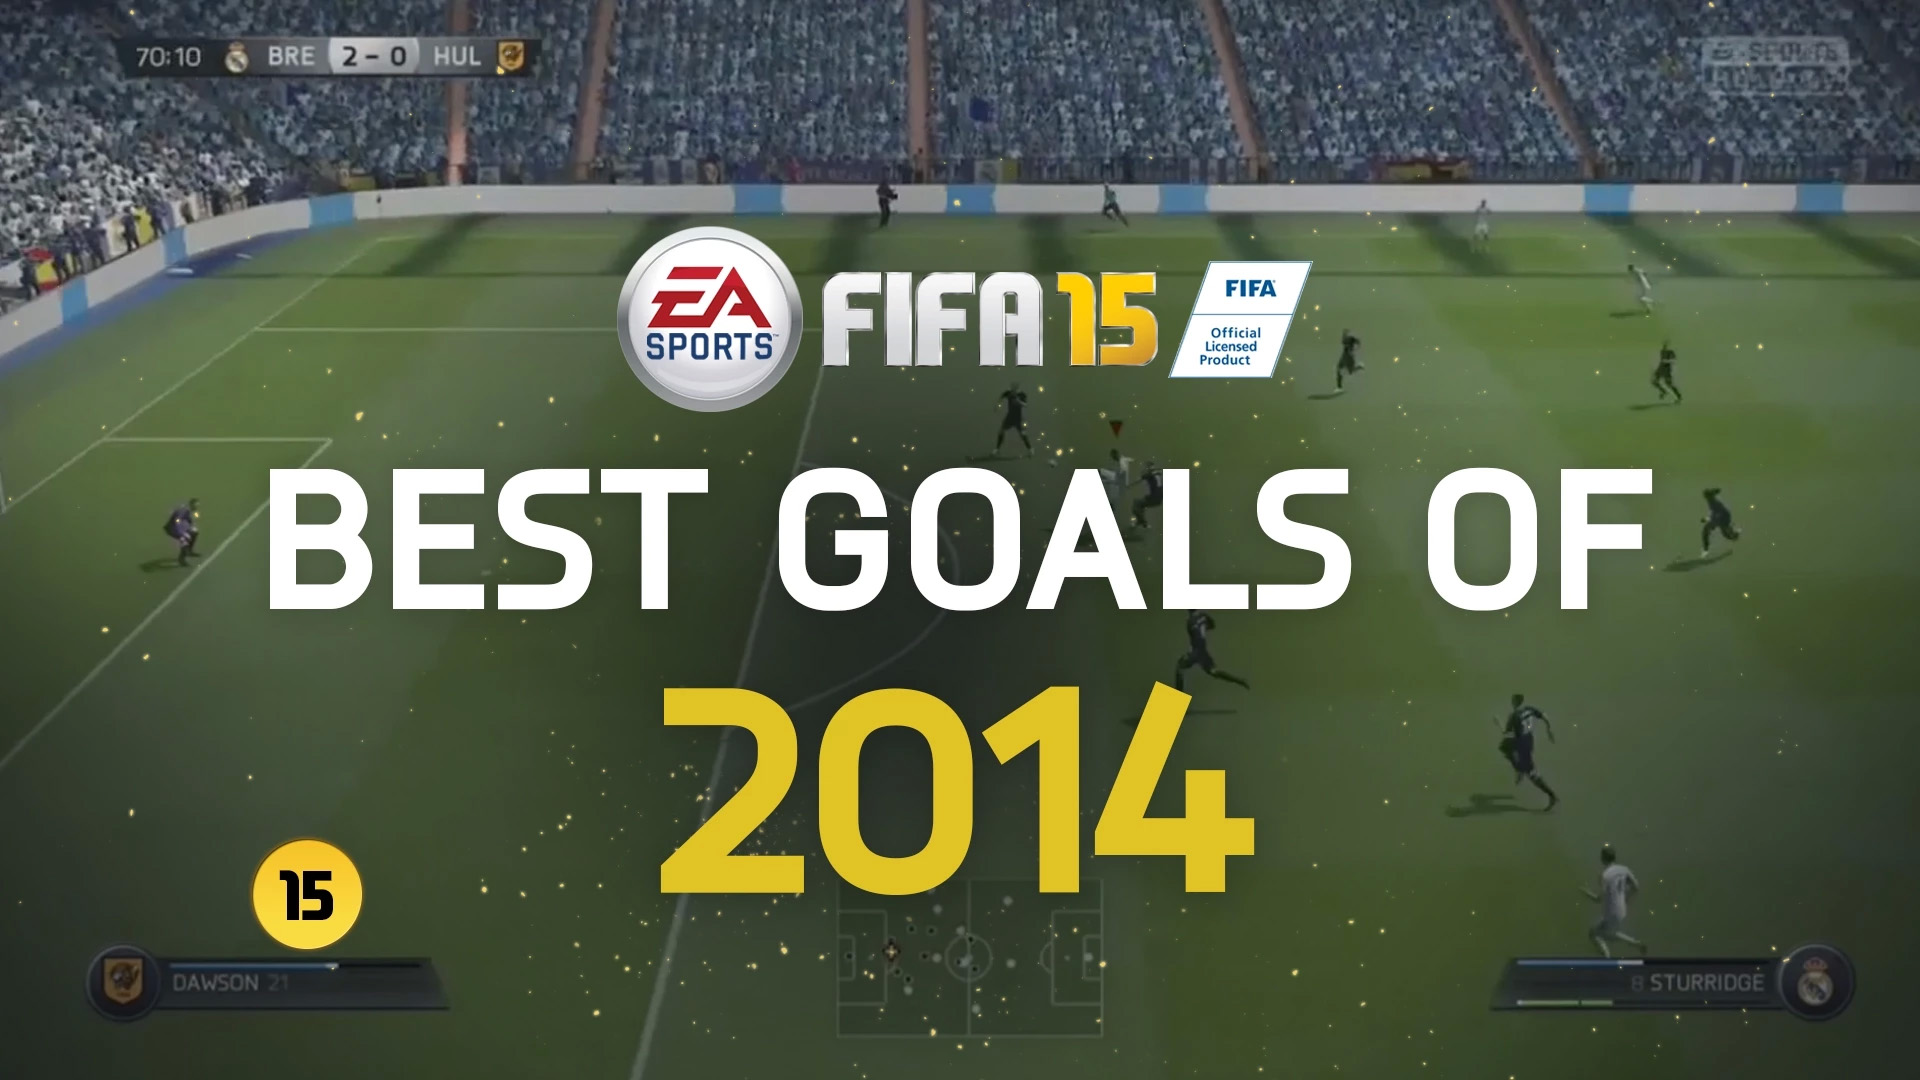 EA SPORTS FIFA 15 | Best Goals of 2014